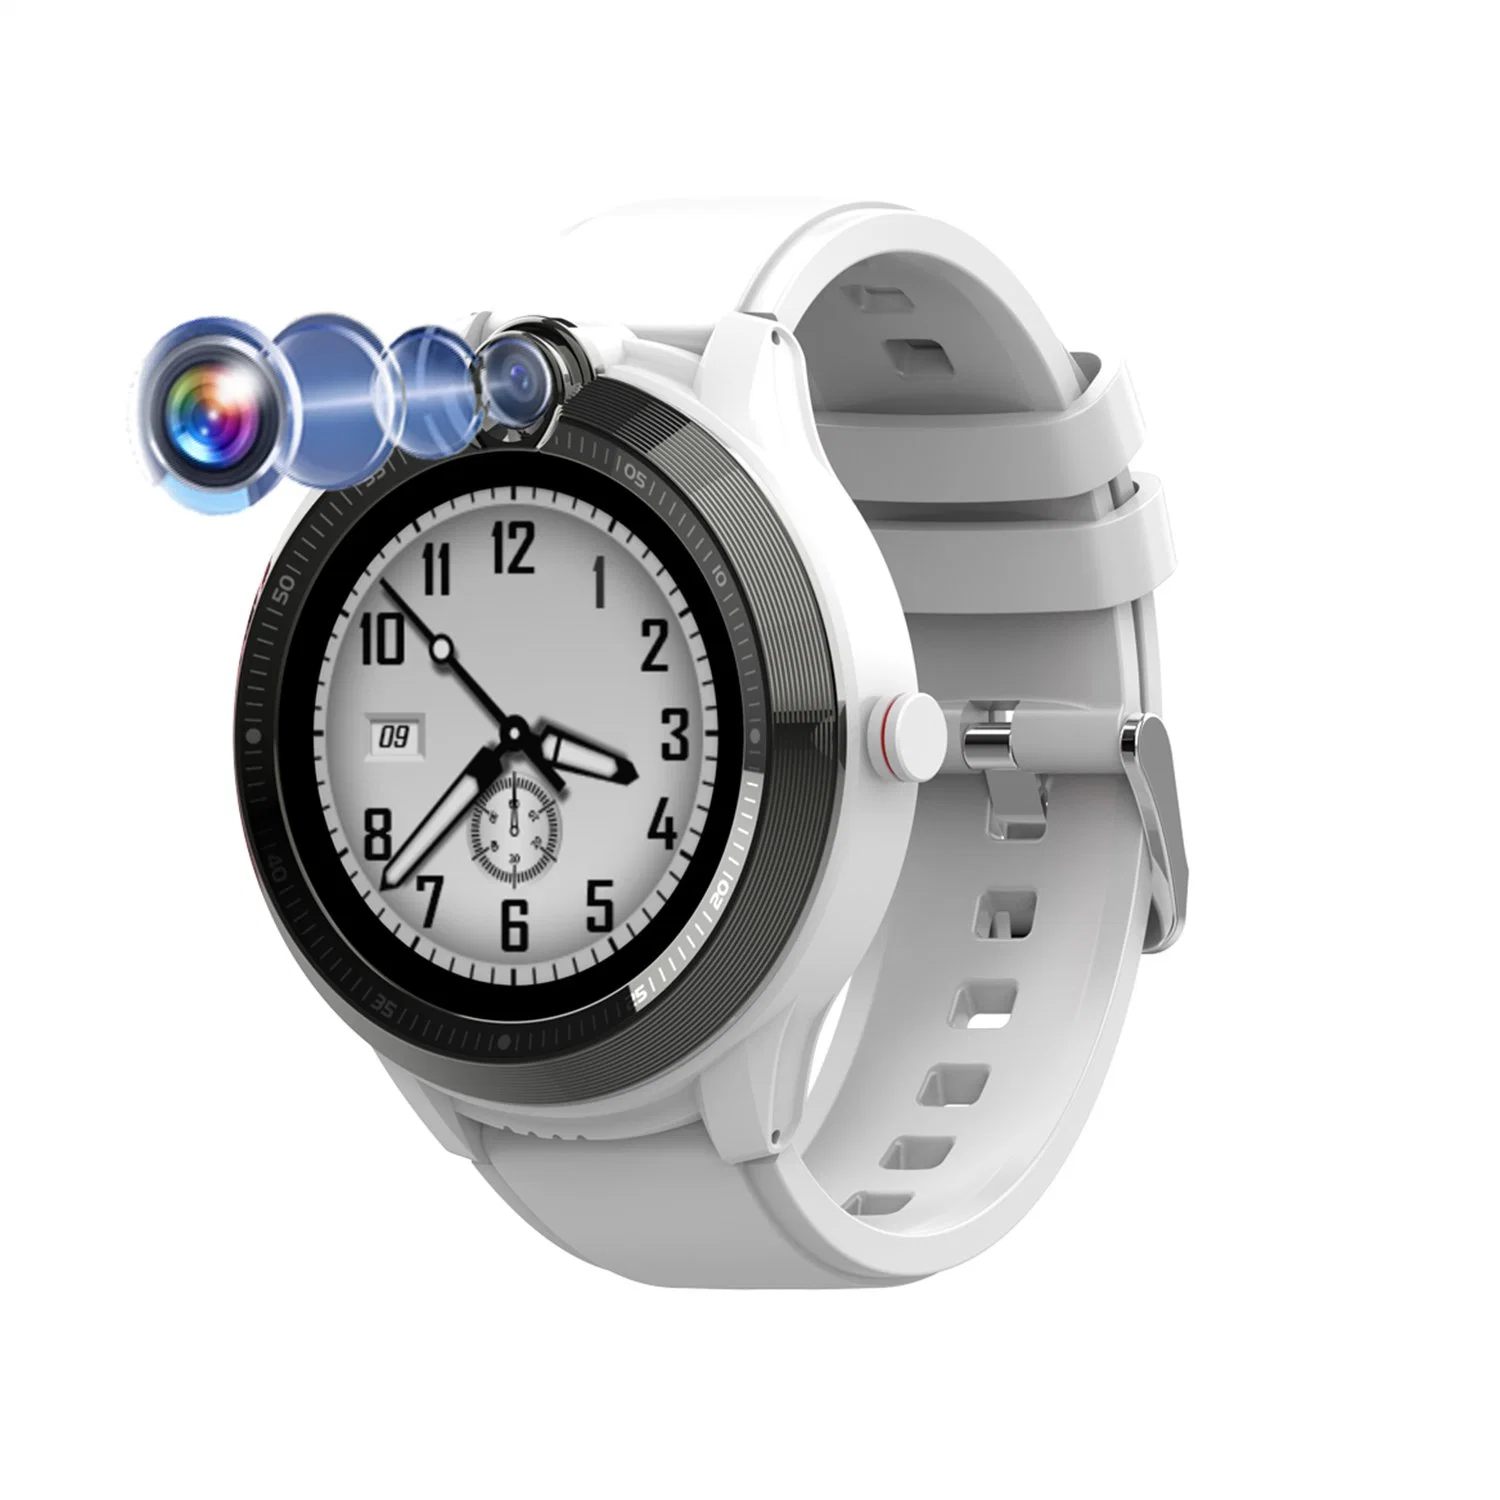 Reloj GPS personal Tracker resistente al agua 4G IP67 aprobado por la CE RoHS Con reloj de alarma de llamada de vídeo para Google en tiempo real mapa monitor